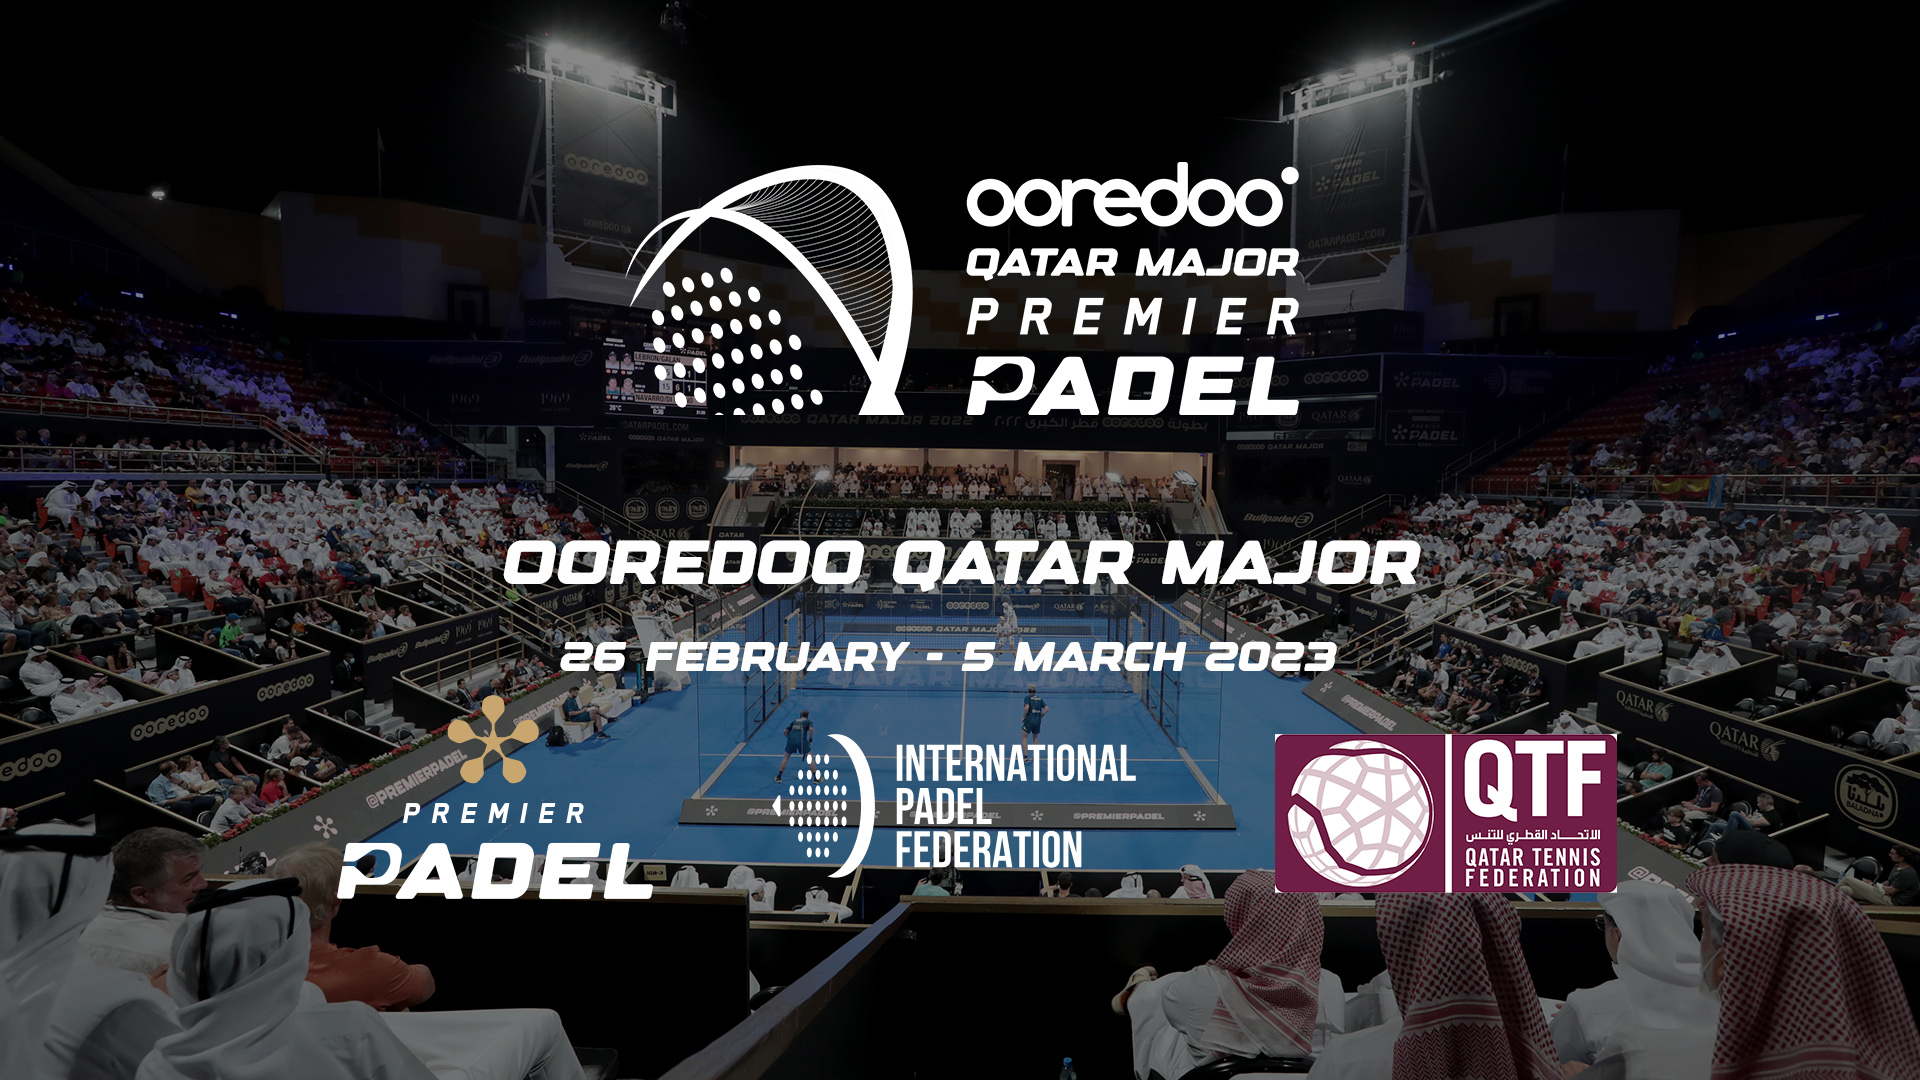 Premier Padel – Ooredoo Qatar Major 2023 Dohassa 26. helmikuuta - 5. maaliskuuta!